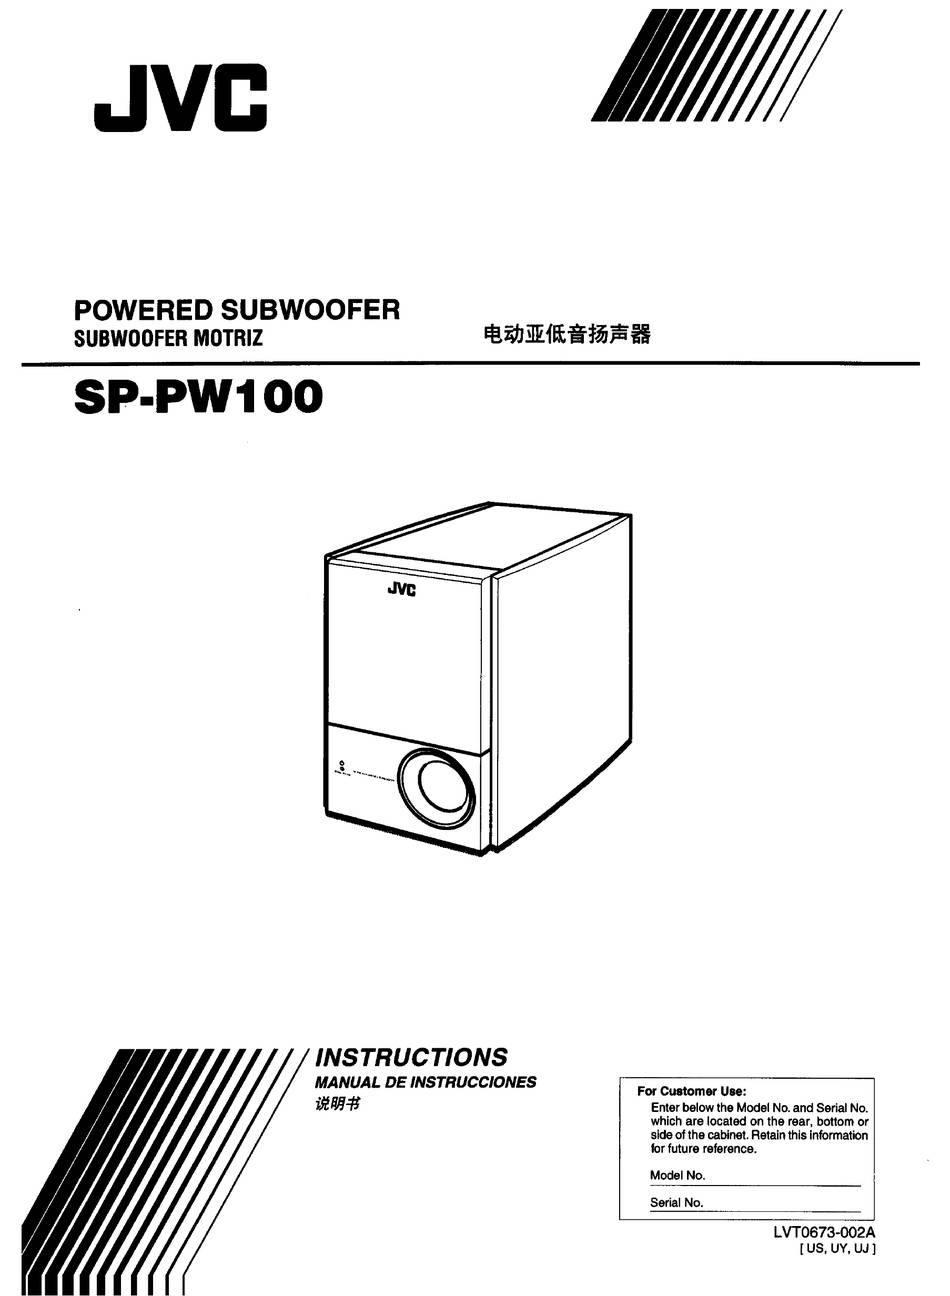 JVC SP-PW100